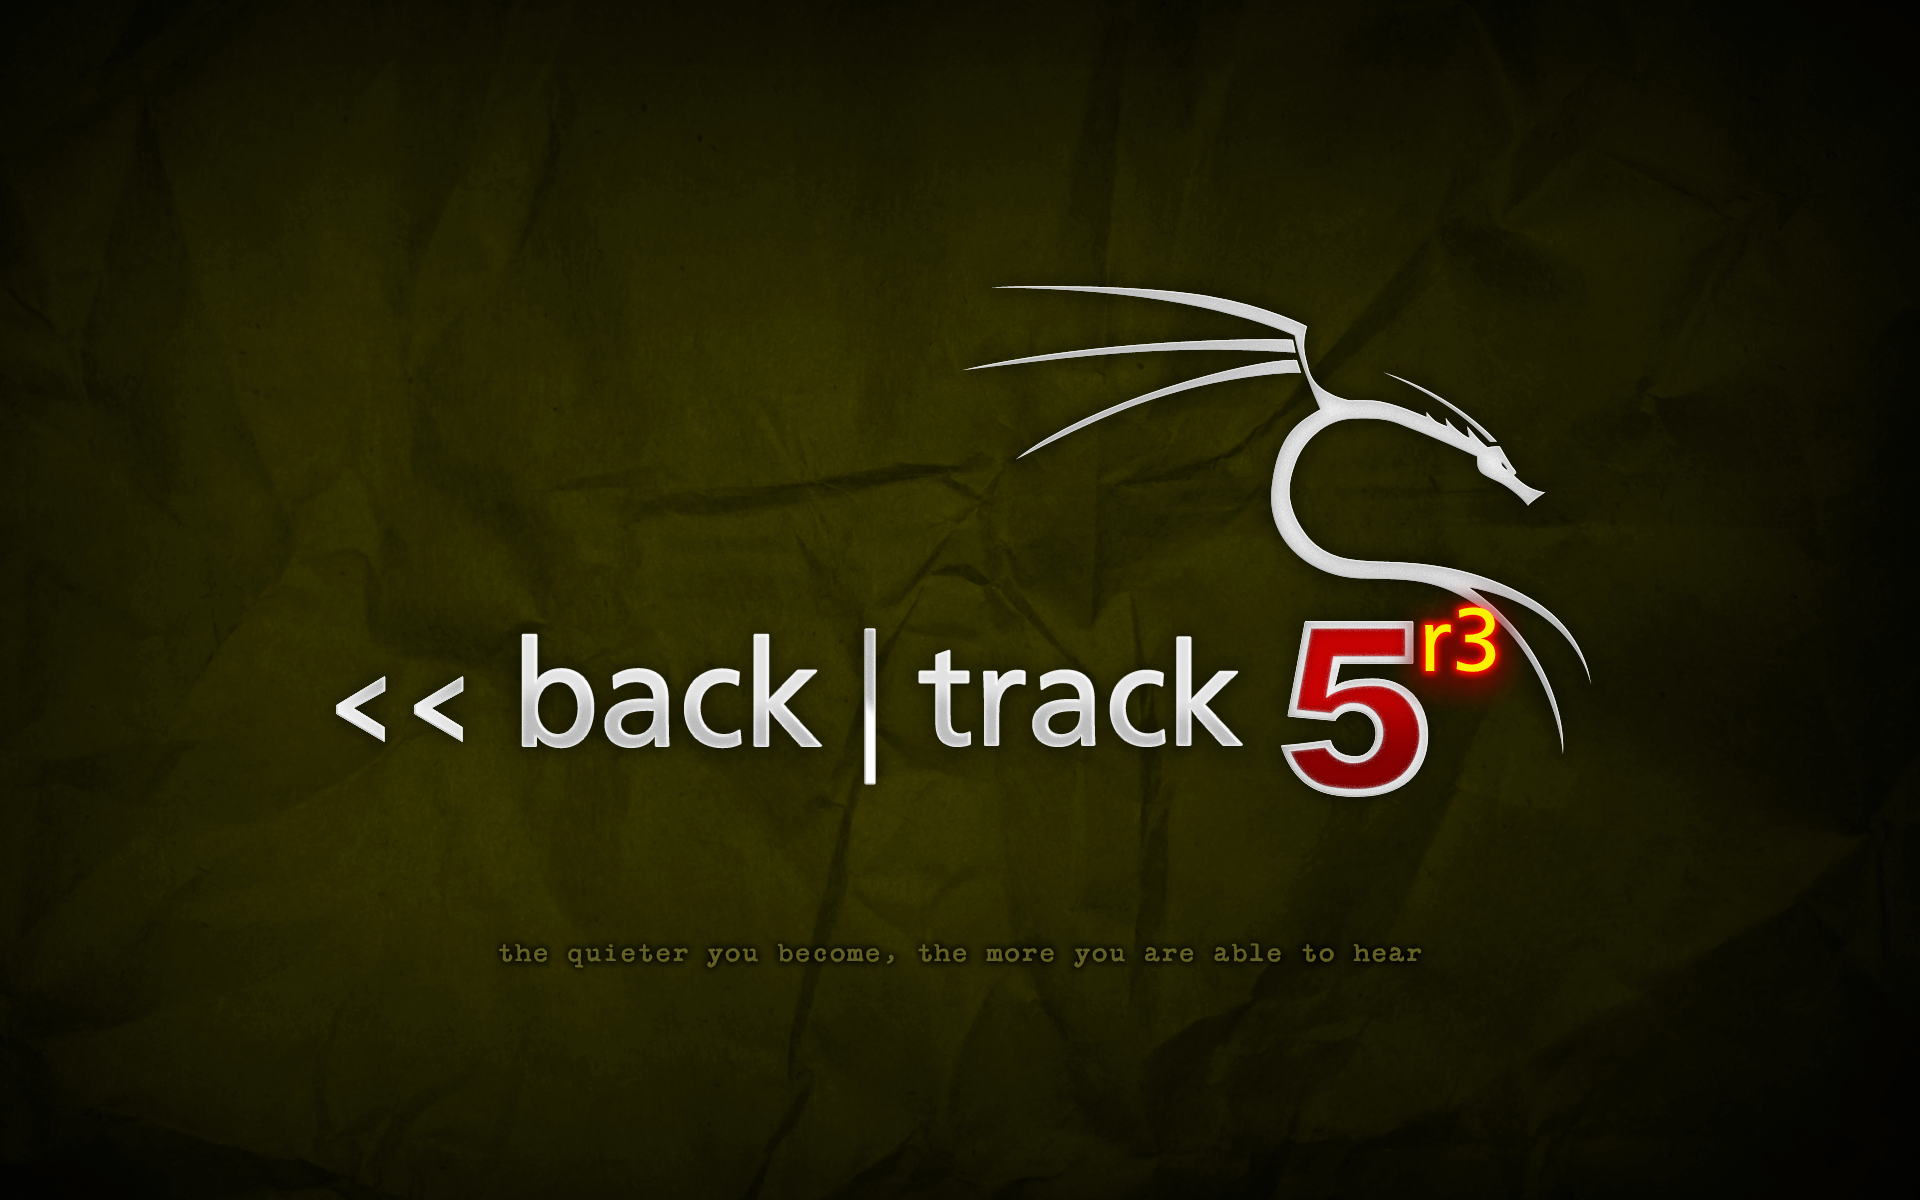 backtrack-5r3-camo.png